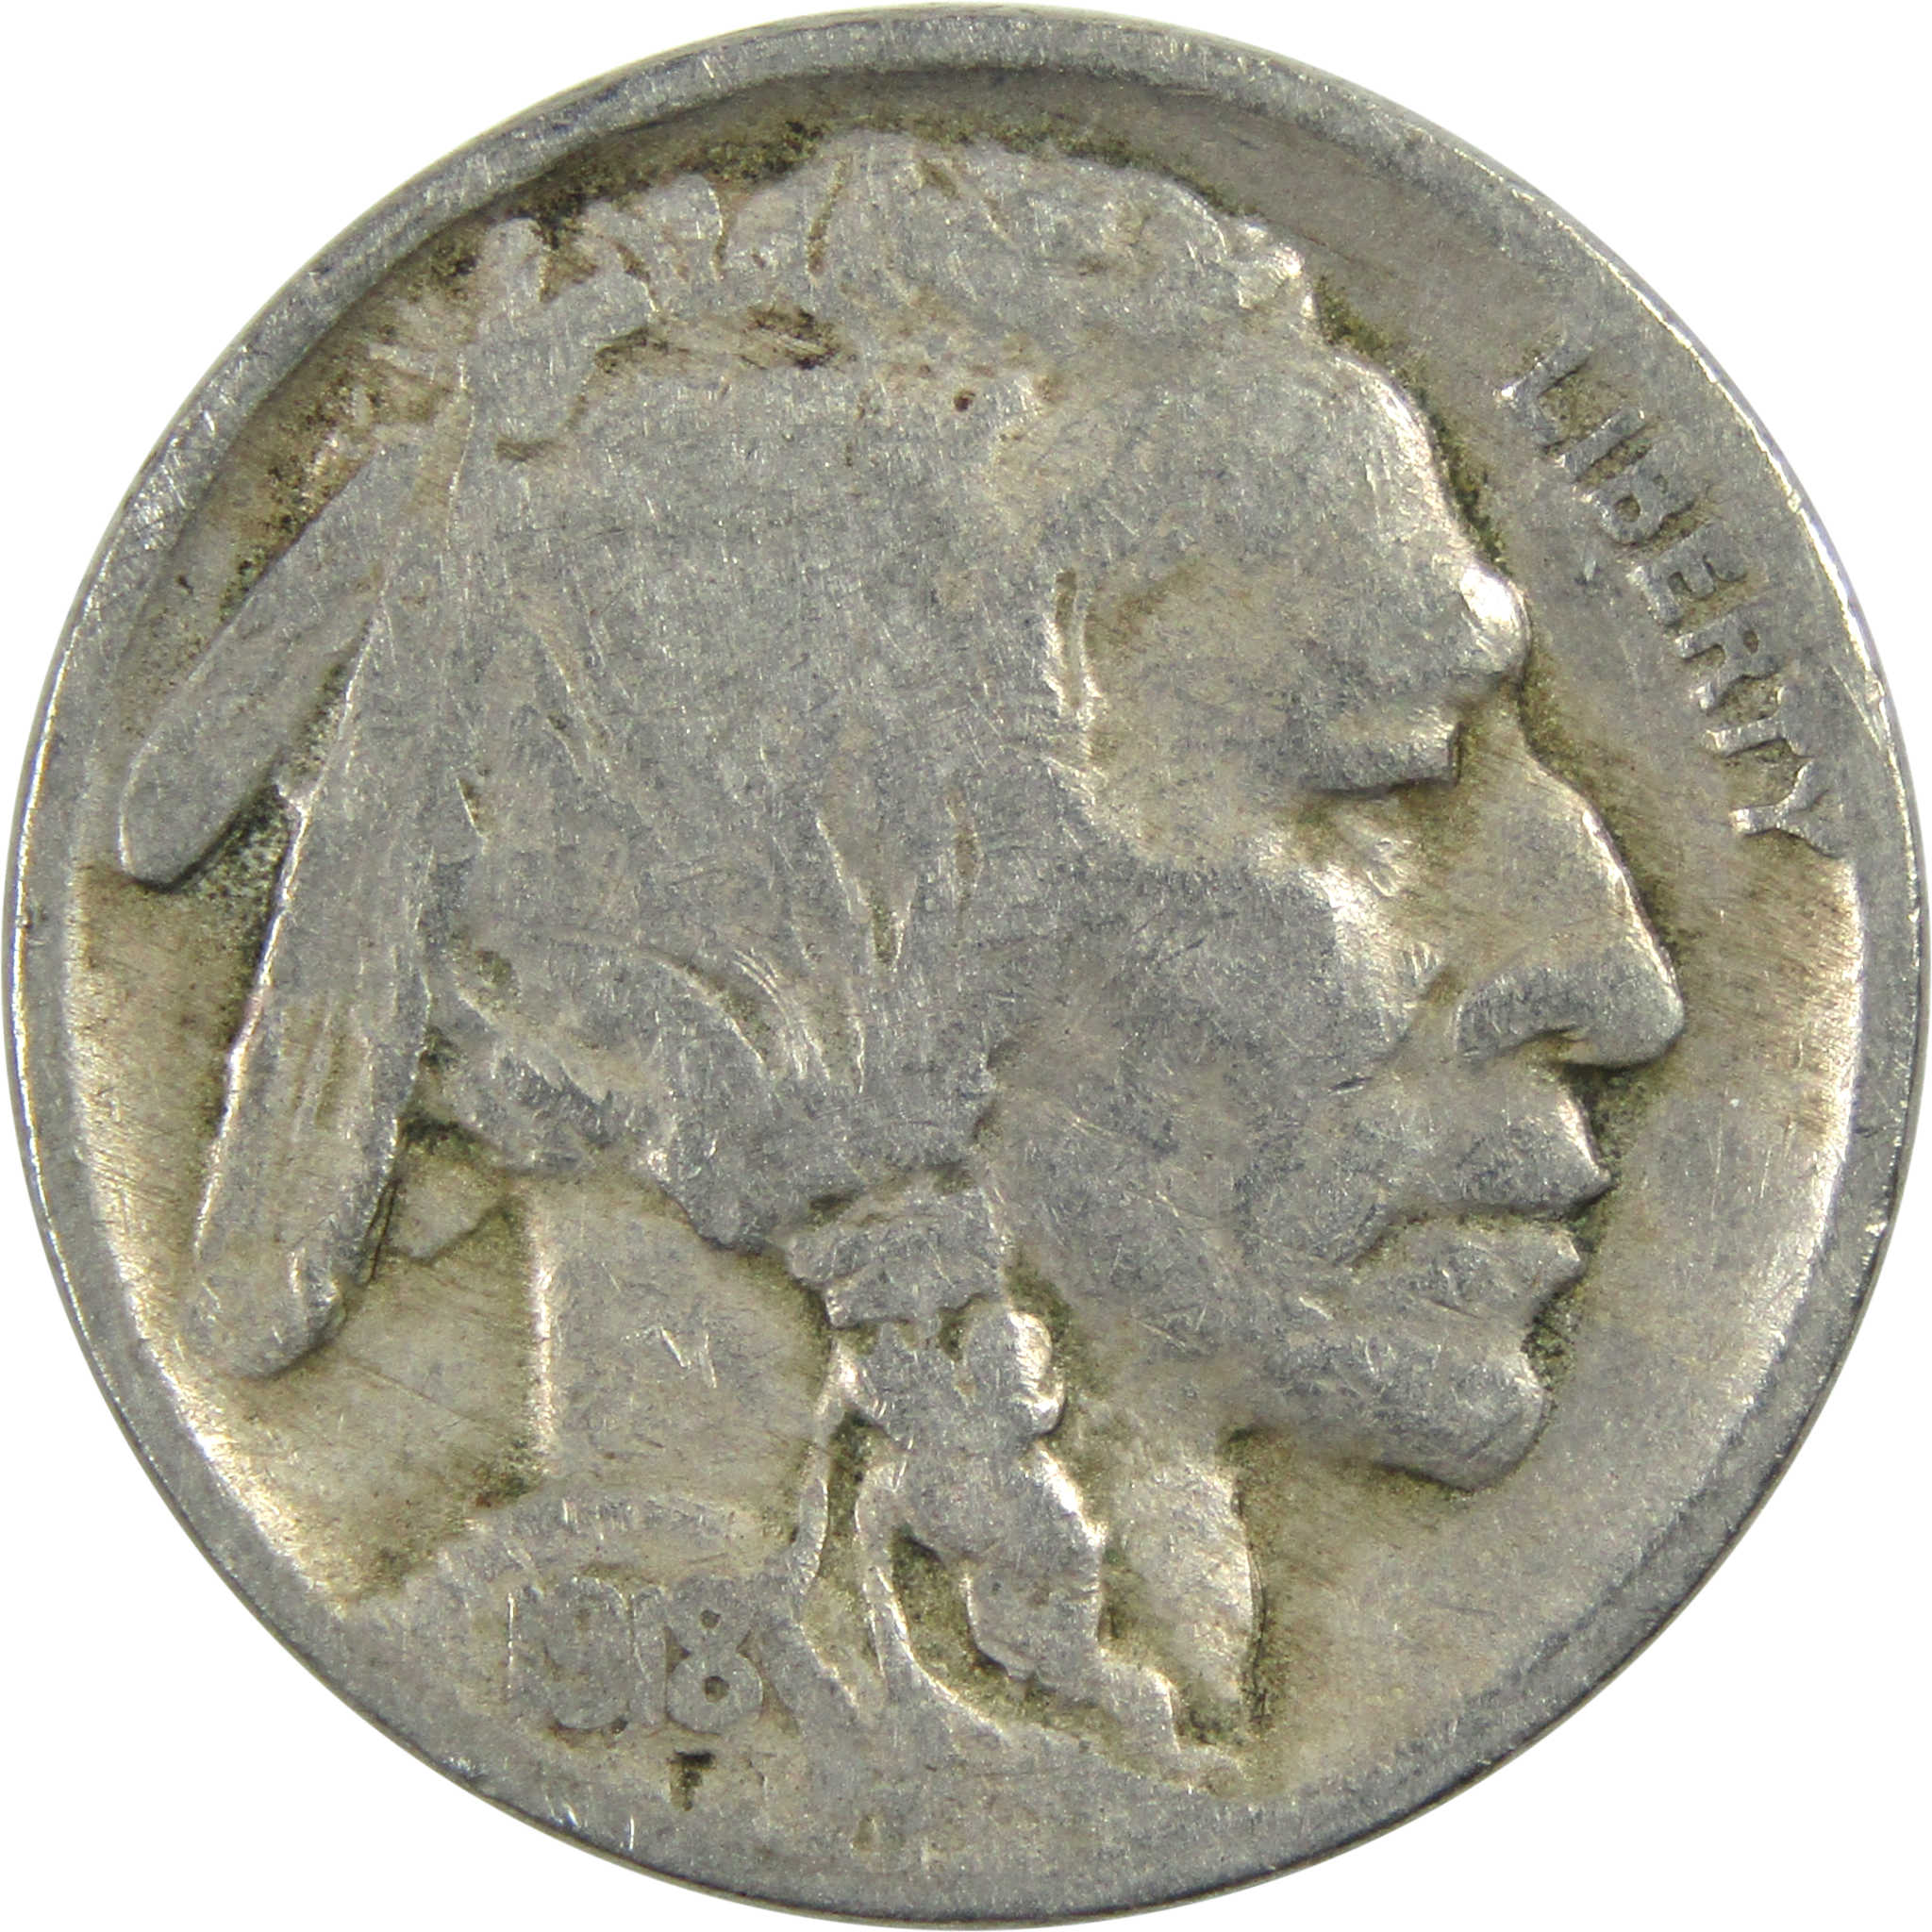 1918 Indian Head Buffalo Nickel VG Very Good 5c Coin SKU:I13006